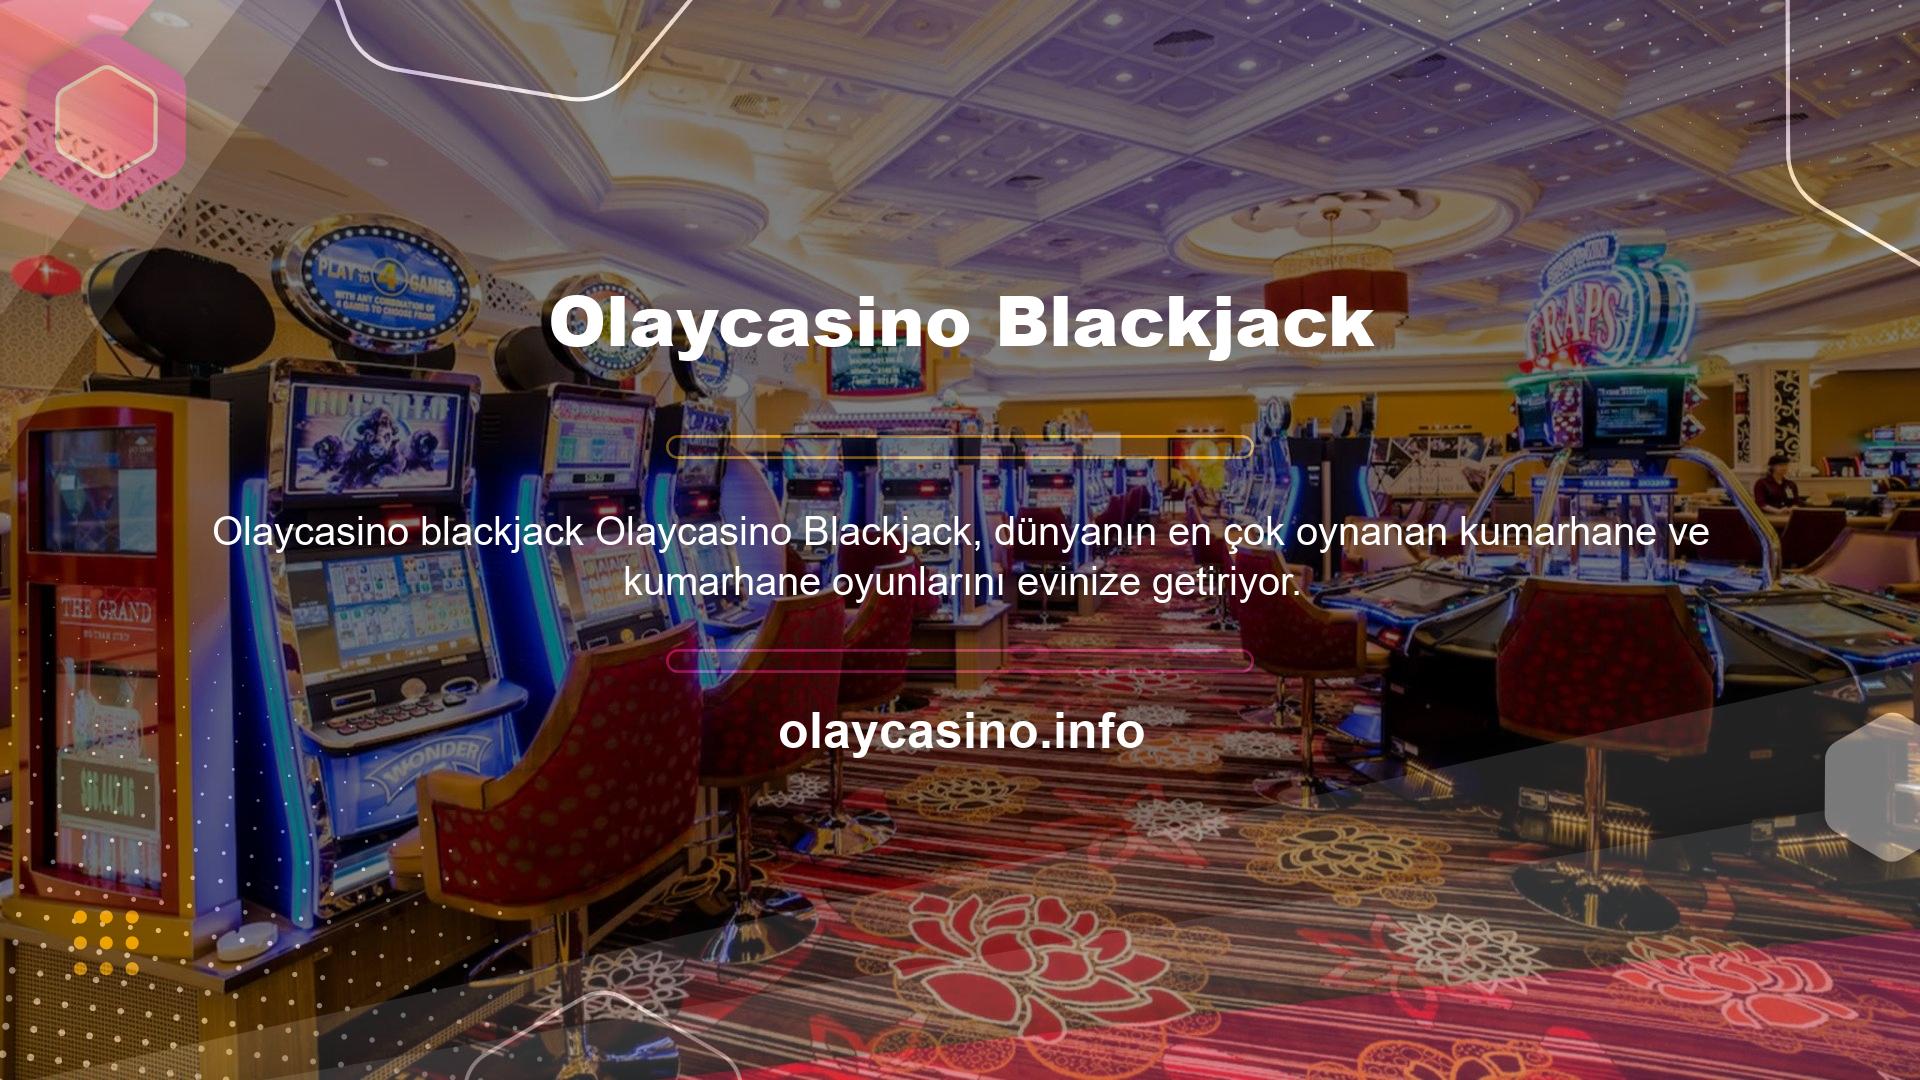 Blackjack, en köklü ve otantik kumarhanelerde oynanan en popüler kart oyunlarından biridir